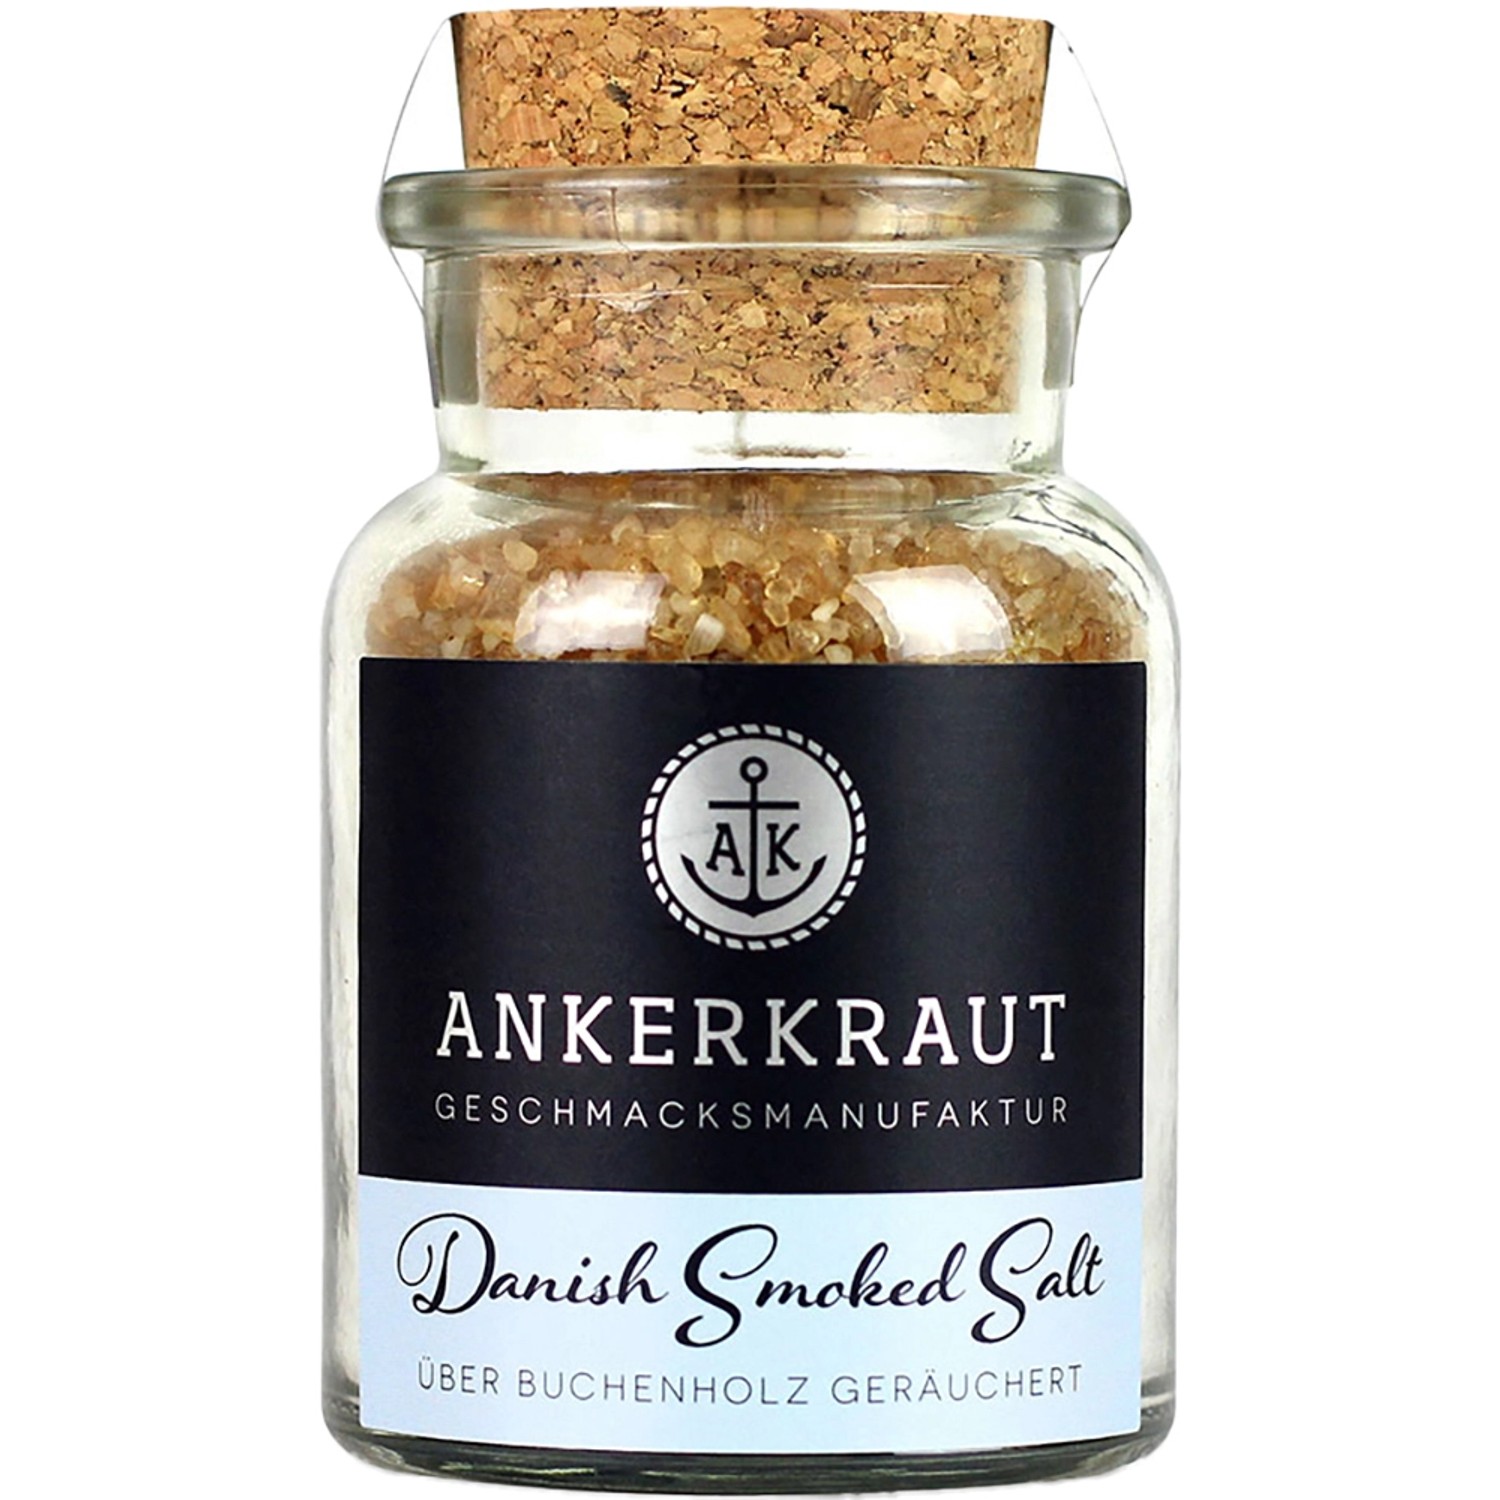 Ankerkraut Danish Smoked Salt im Korkglas 160g von Ankerkraut